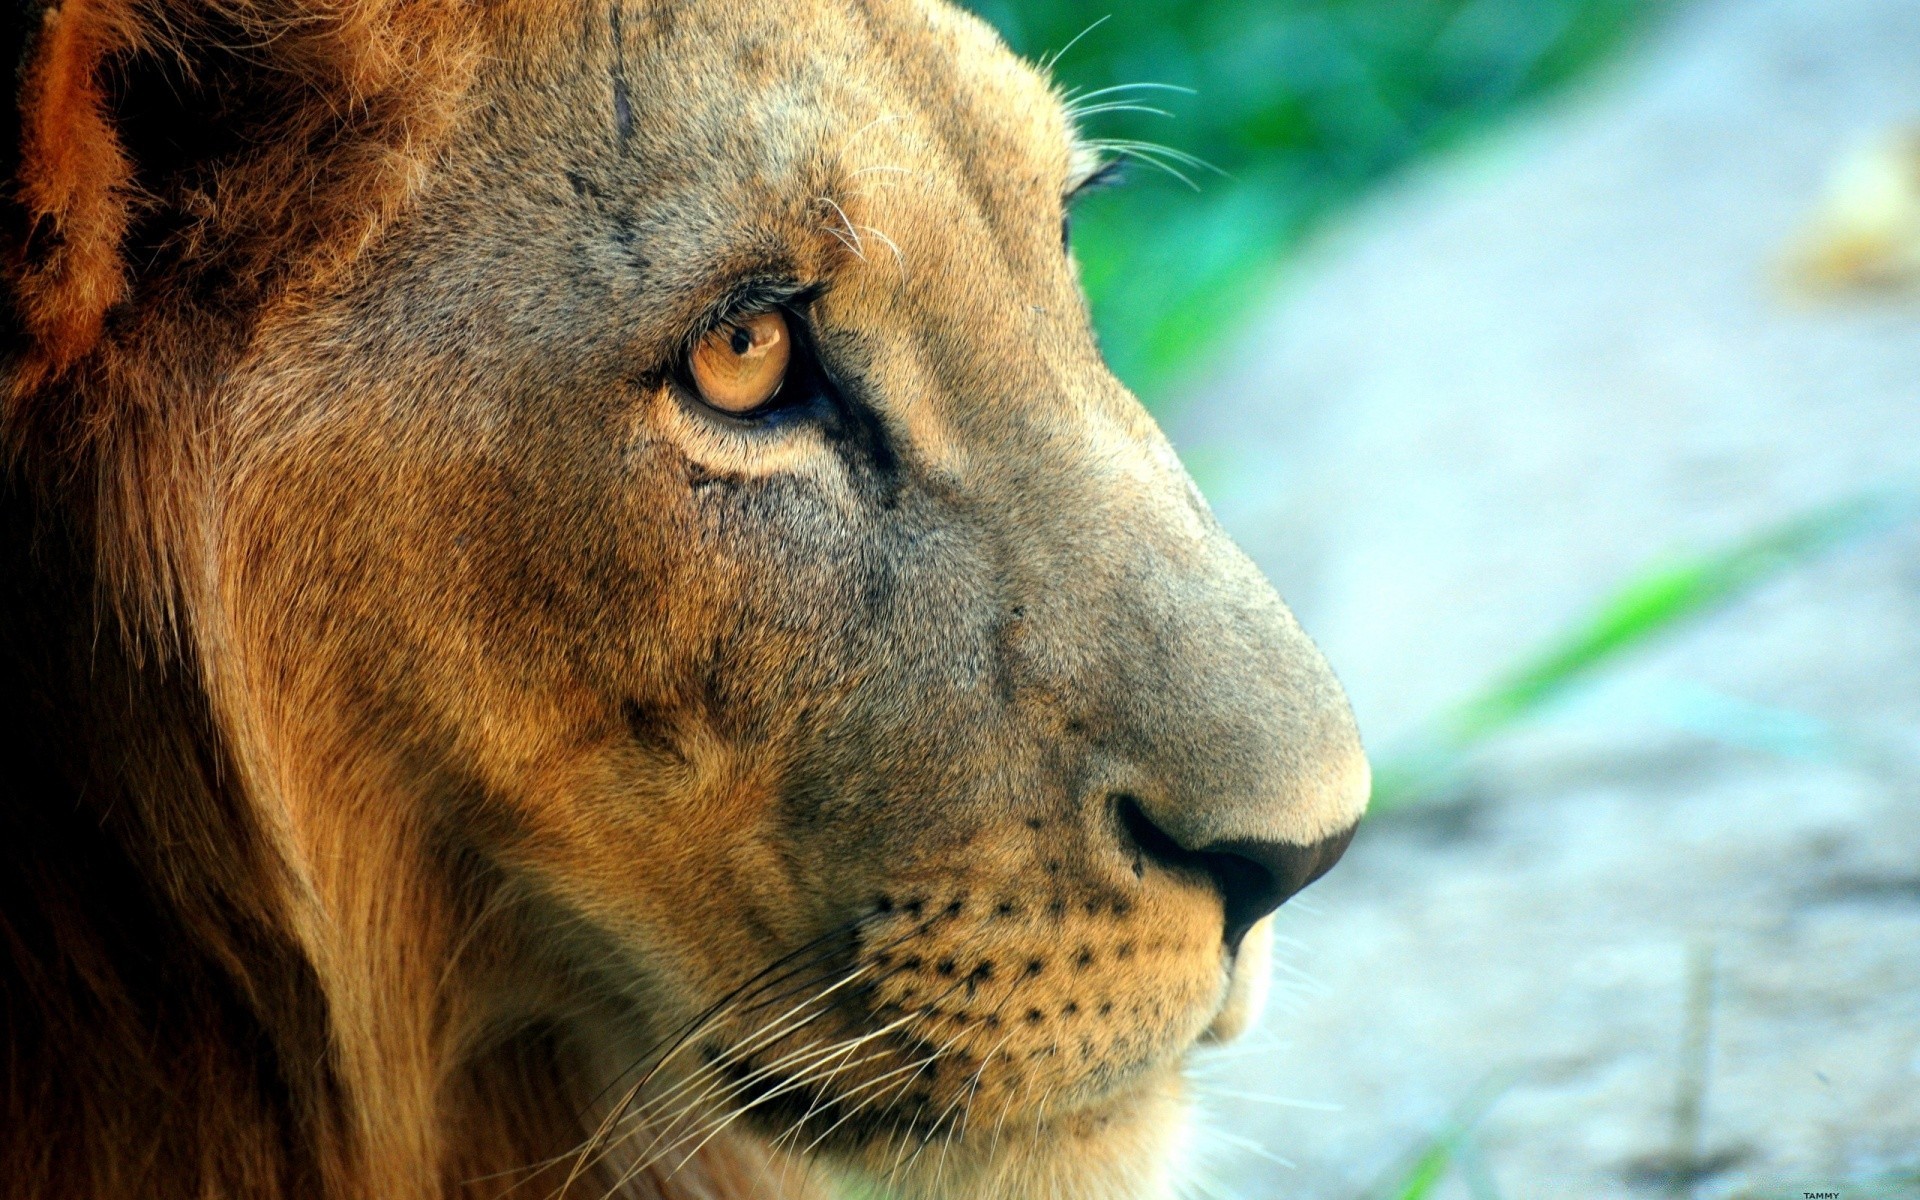 животные дикой природы млекопитающее природа кошка животное лев зоопарк мех дикий портрет глаз большой хищник сафари опасность охотник